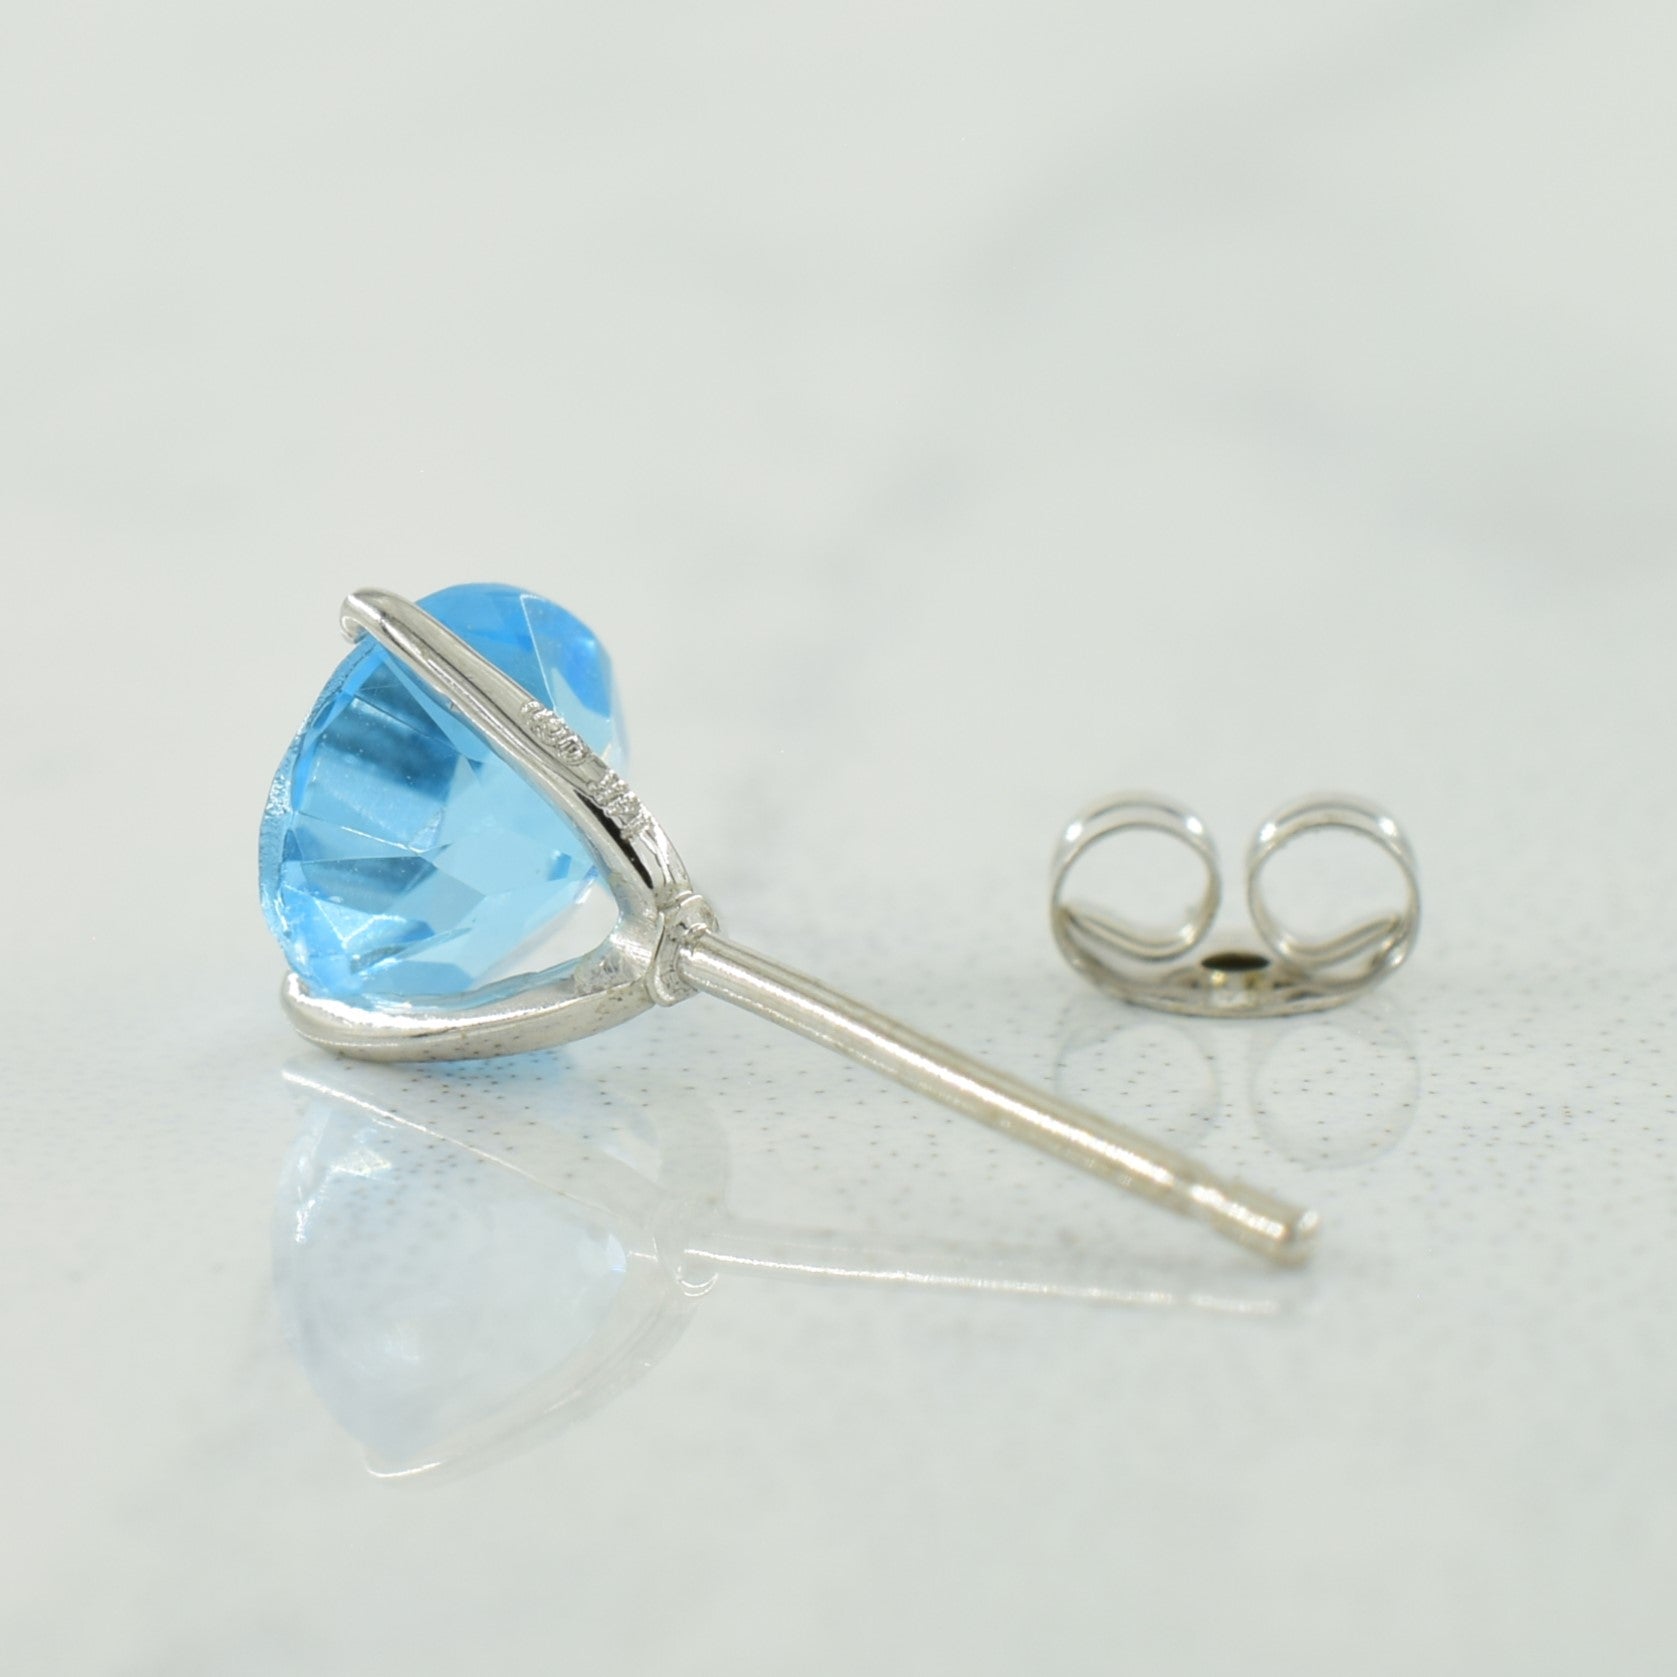 Blue Topaz Stud Earrings | 1.10ctw |